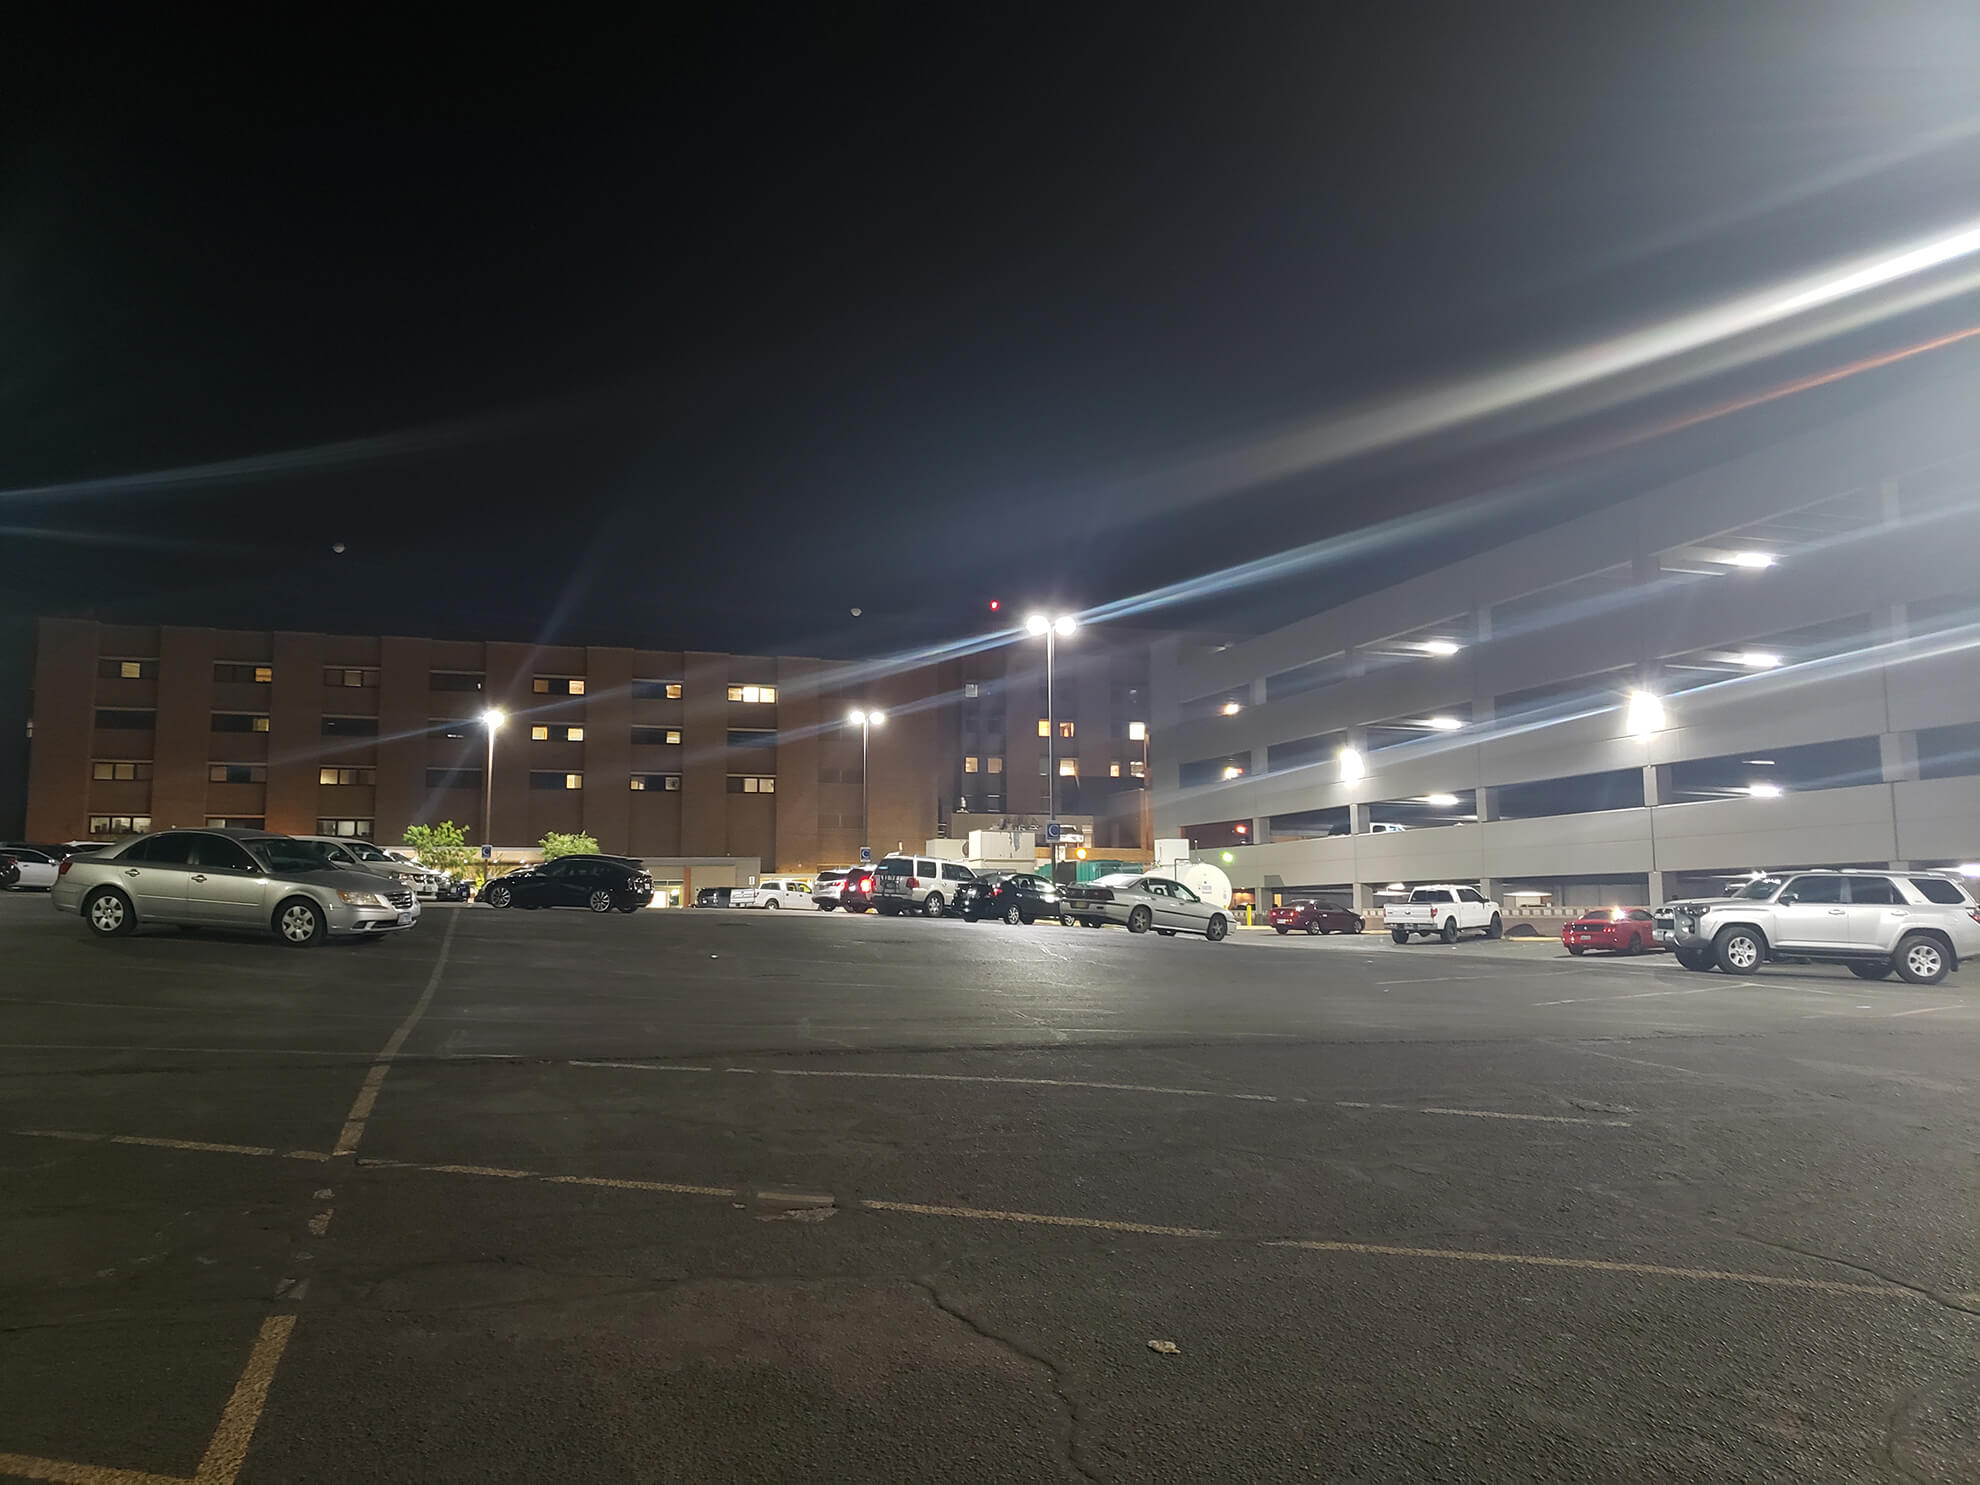 Hospital Parking Lights